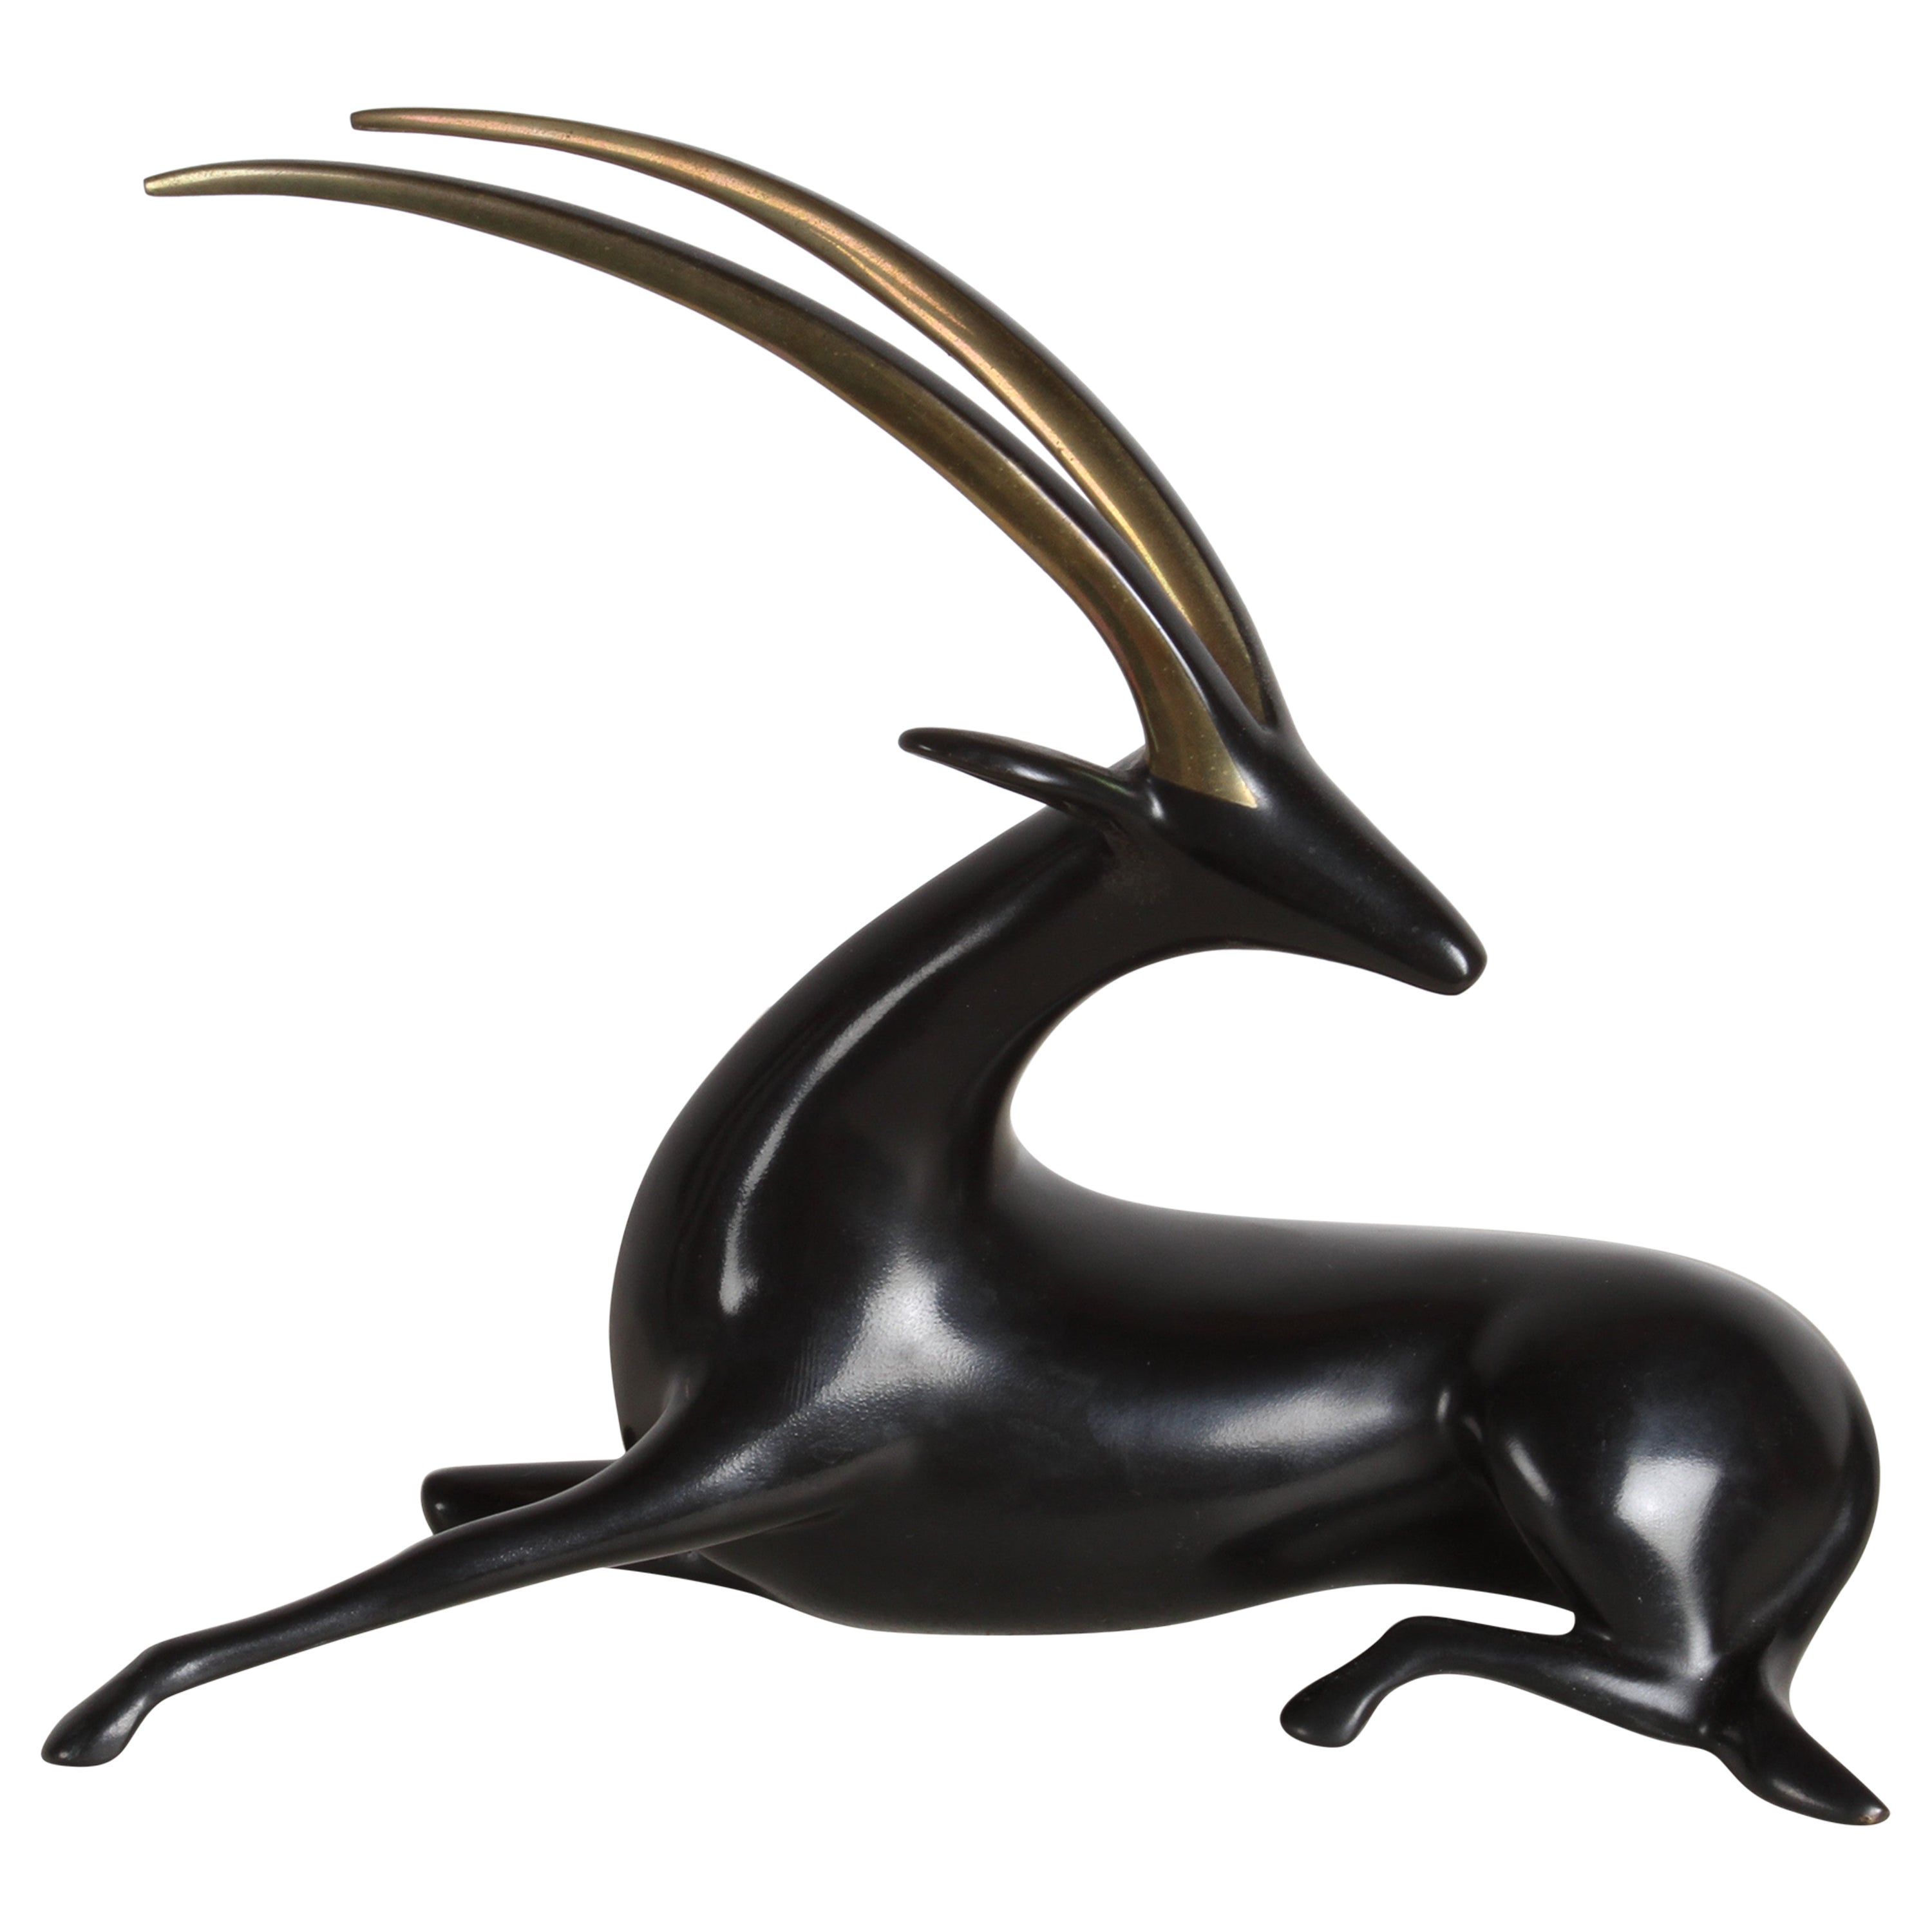 Loet VanDerVeen Art Bronze ORYX Sculpture Limited Edition Bronze #419/750 For Sale